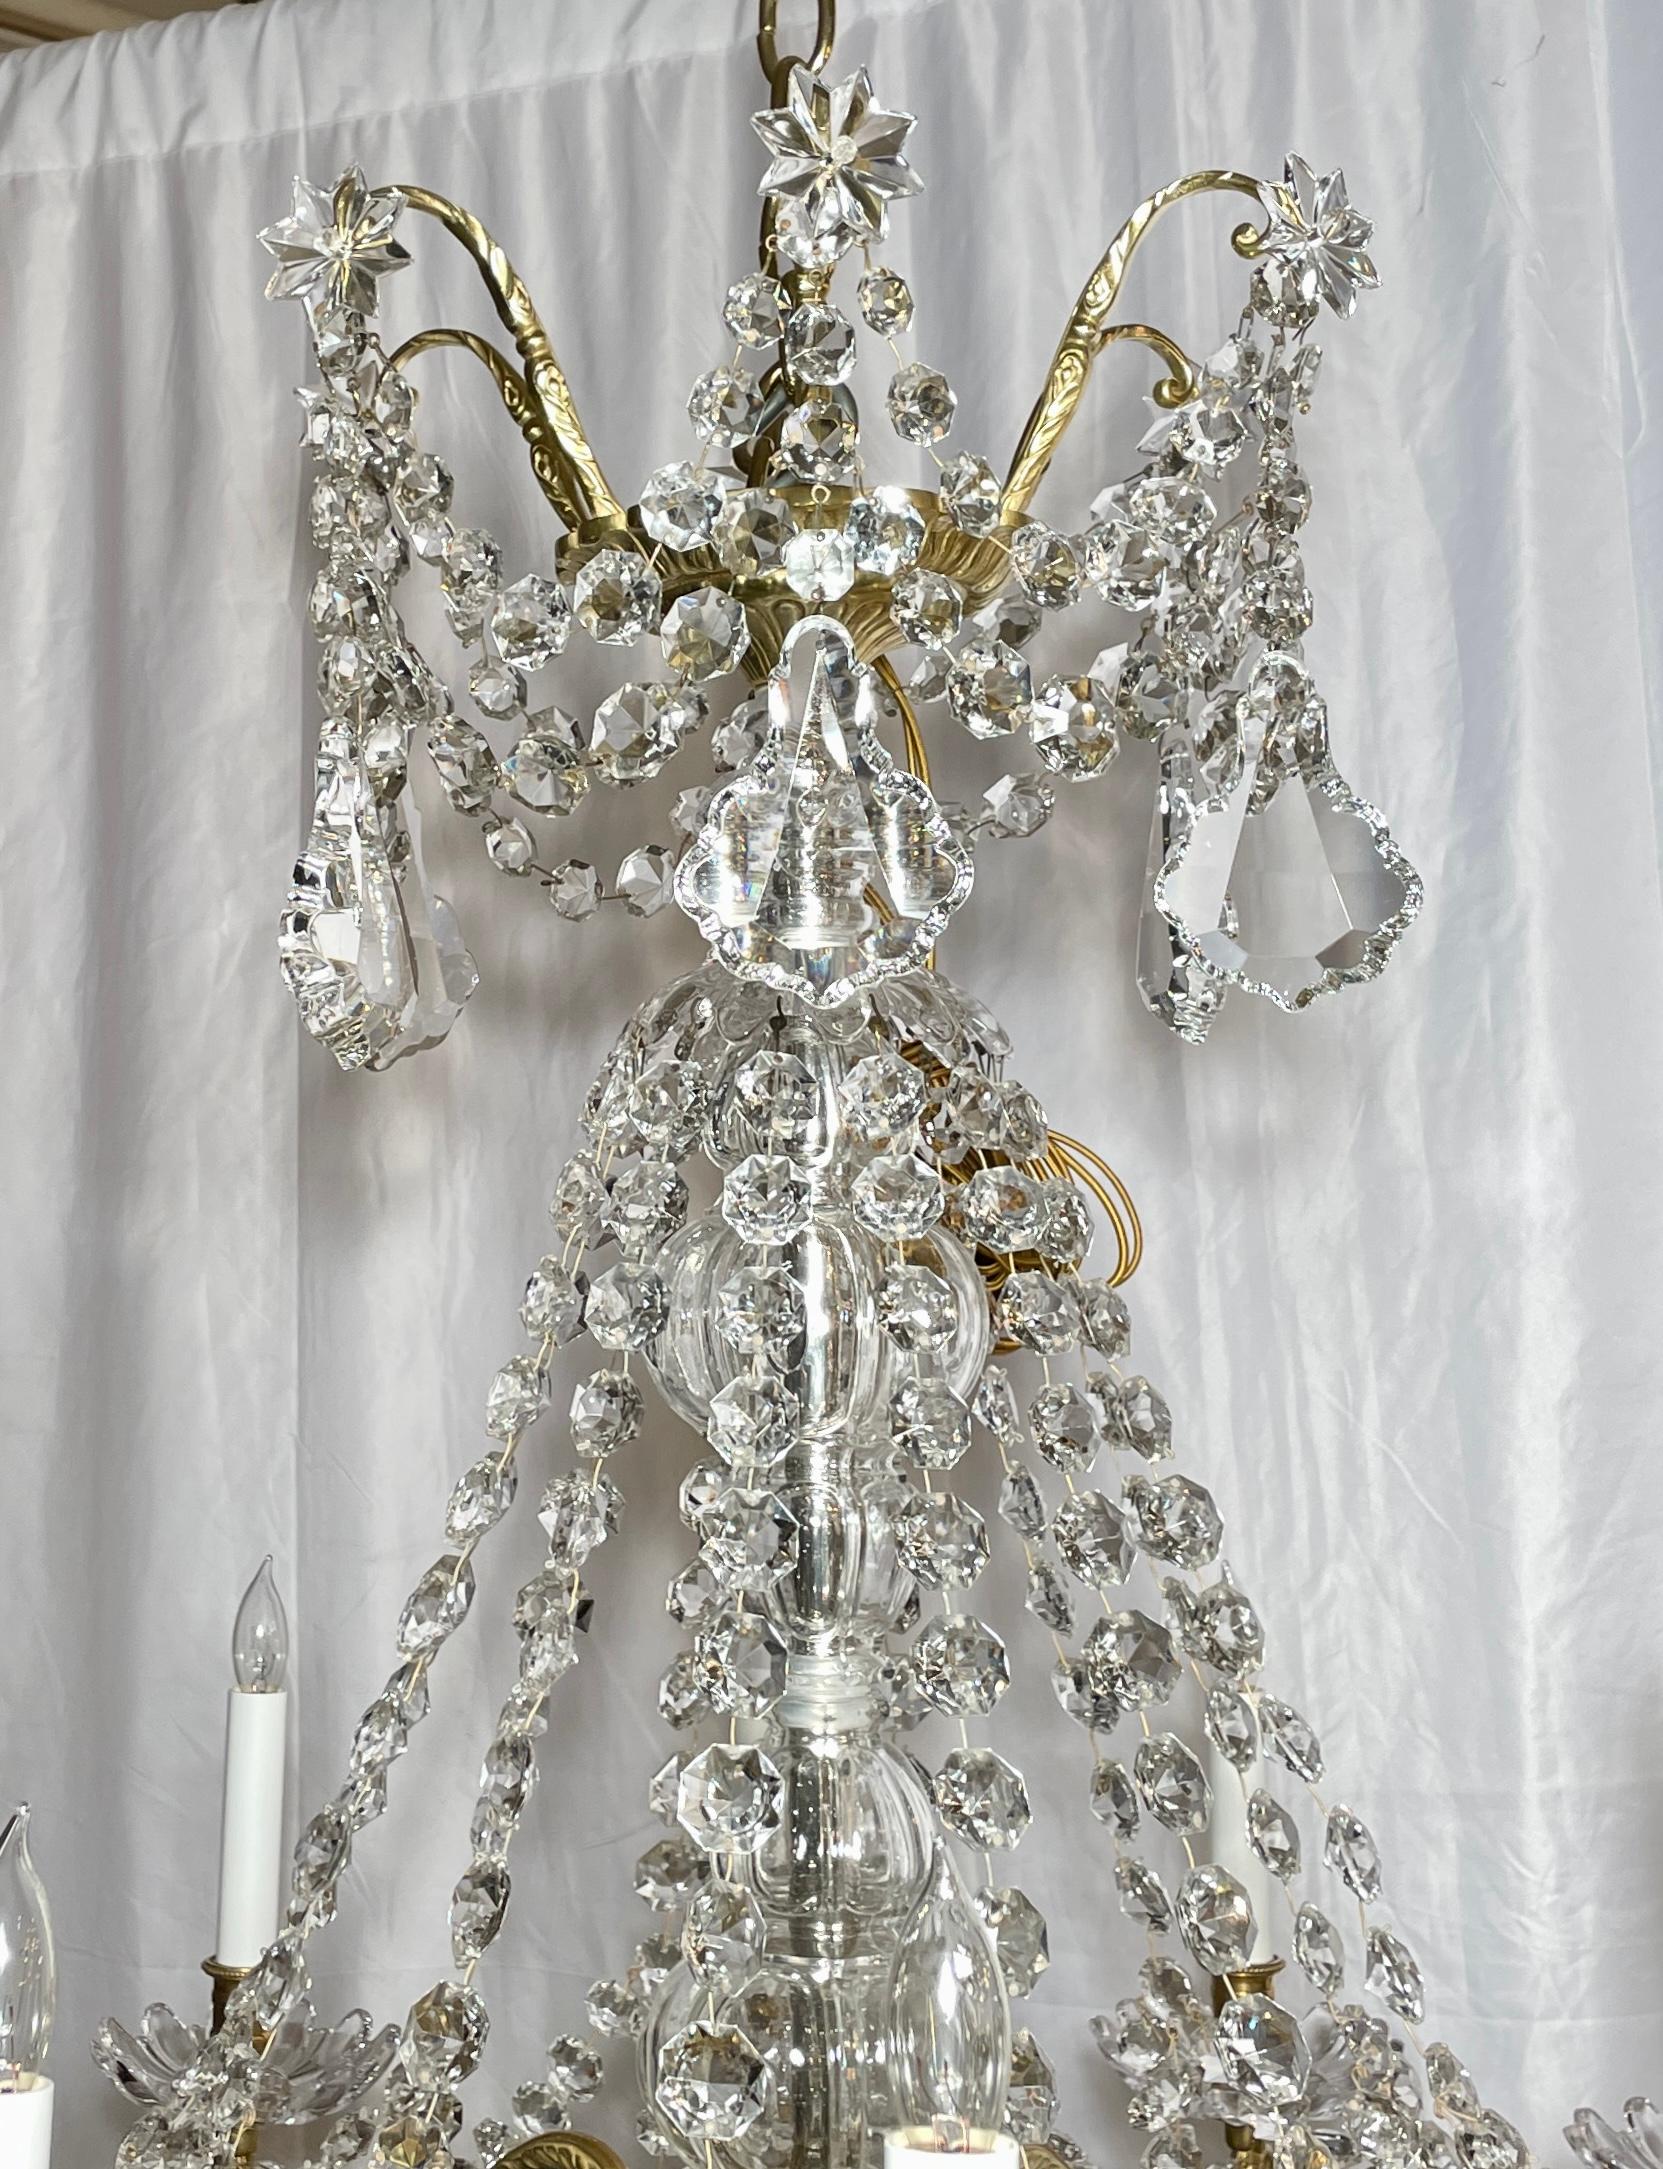 Lustre ancien en cristal taillé et bronze doré à 12 lumières, vers 1890.
Ce magnifique lustre est lourdement drapé de prismes et de perles en cristal fin.